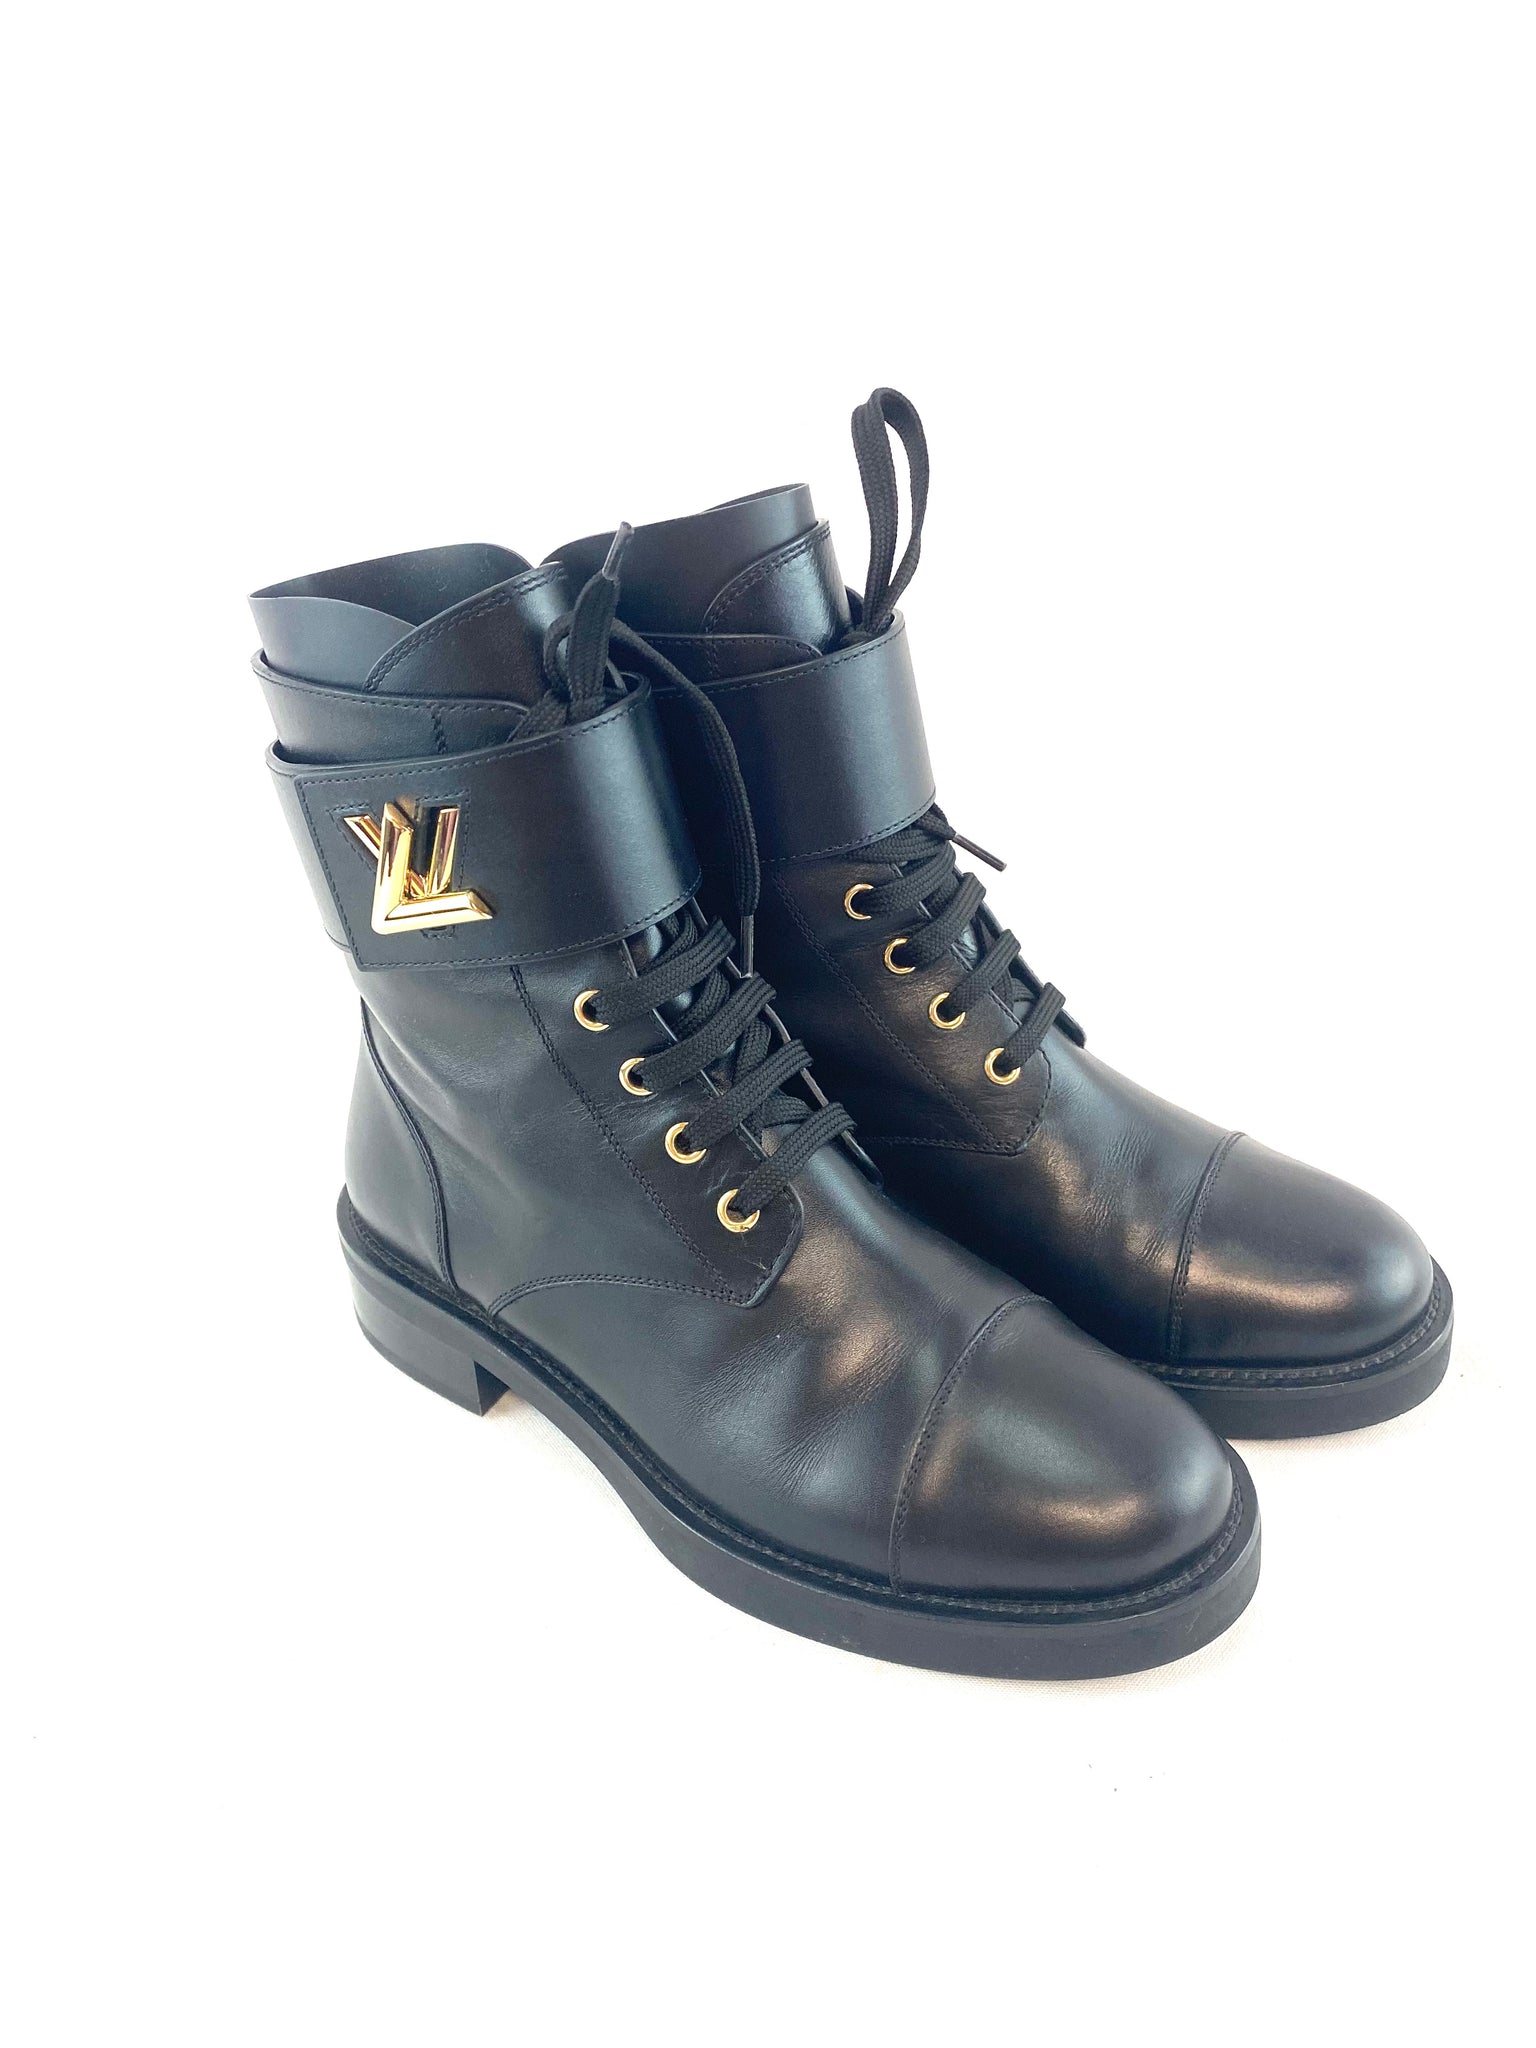 Superb Louis Vuitton Wonderland biker boots in black leather